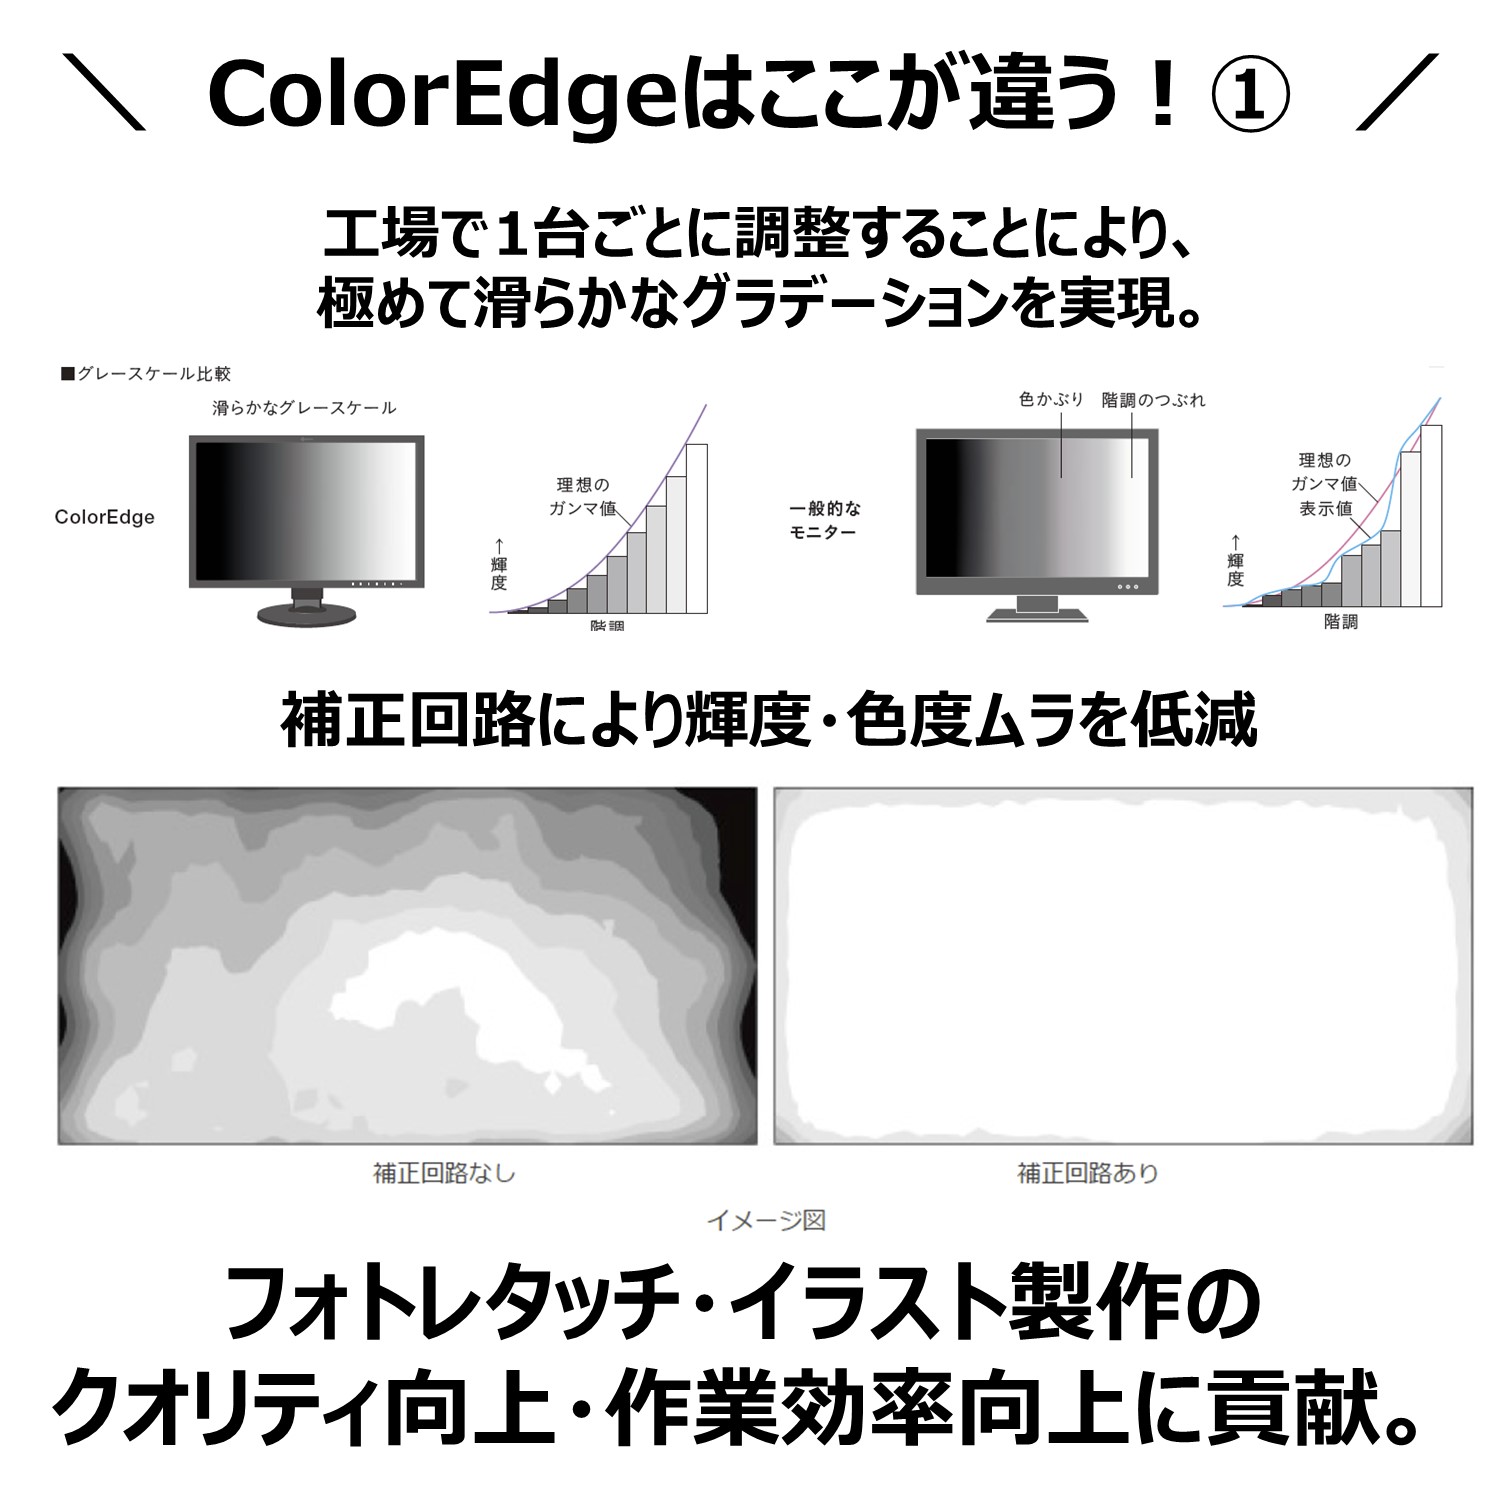 E Trend ナナオ Eizo Cs2731 Bk 液晶モニター Coloredge Cs2731